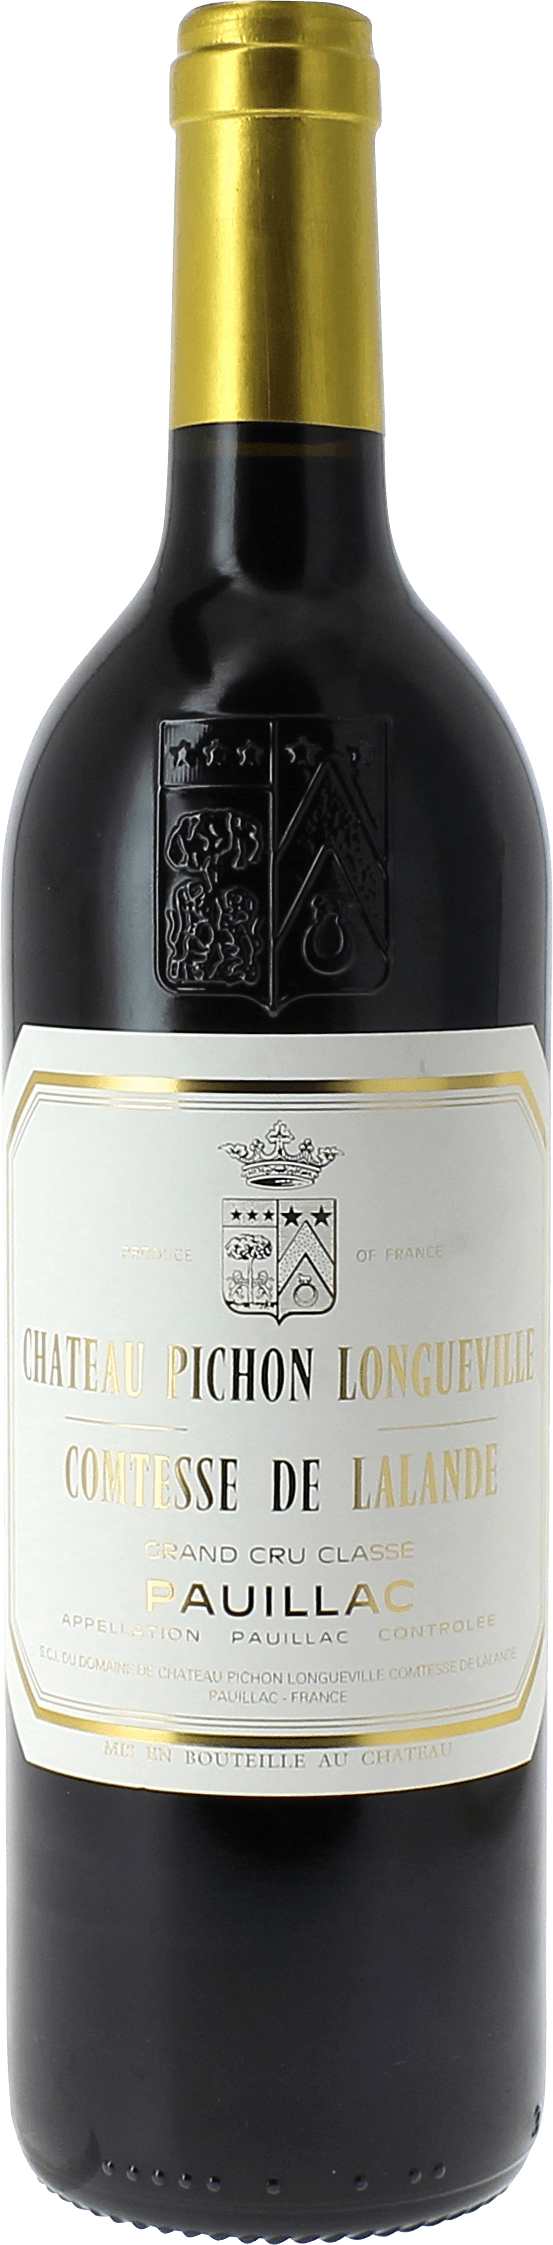 Pichon comtesse de lalande 1982 2me Grand cru class Pauillac, Bordeaux rouge